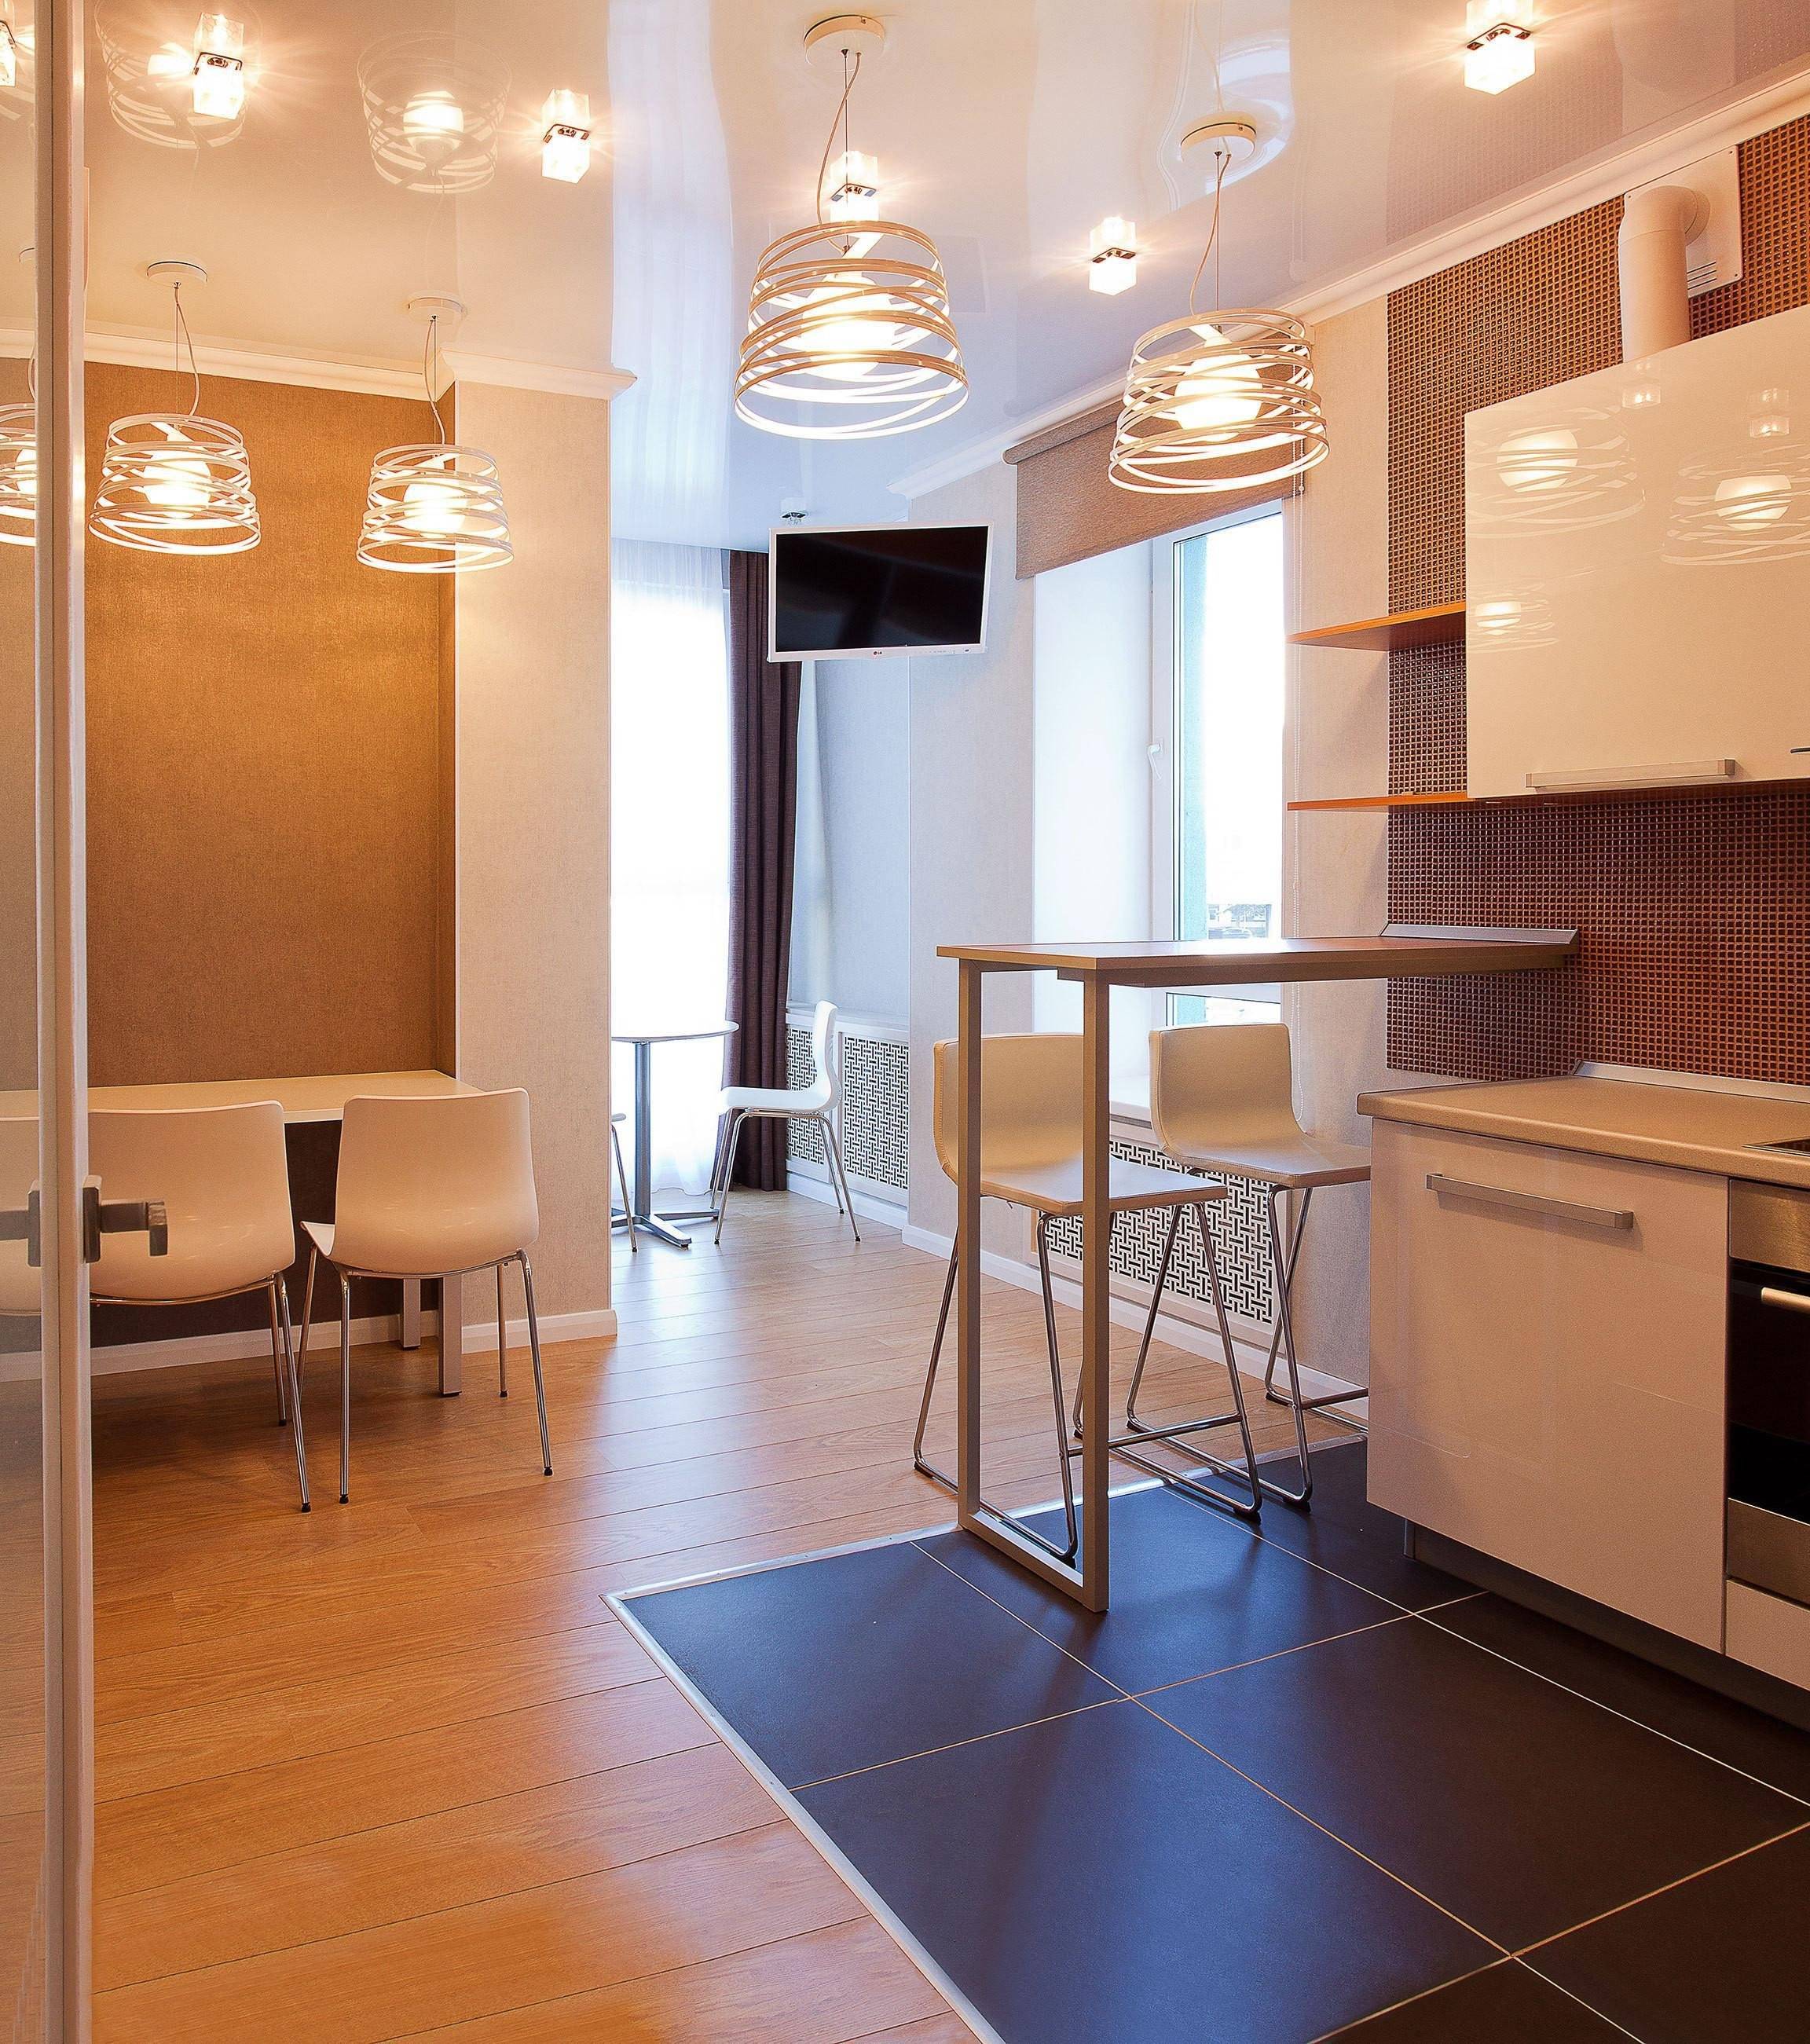 Освещение на кухне с натяжным потолком: точечные светильники, расположение в интерьере, споты для маленькой, потолочные варианты